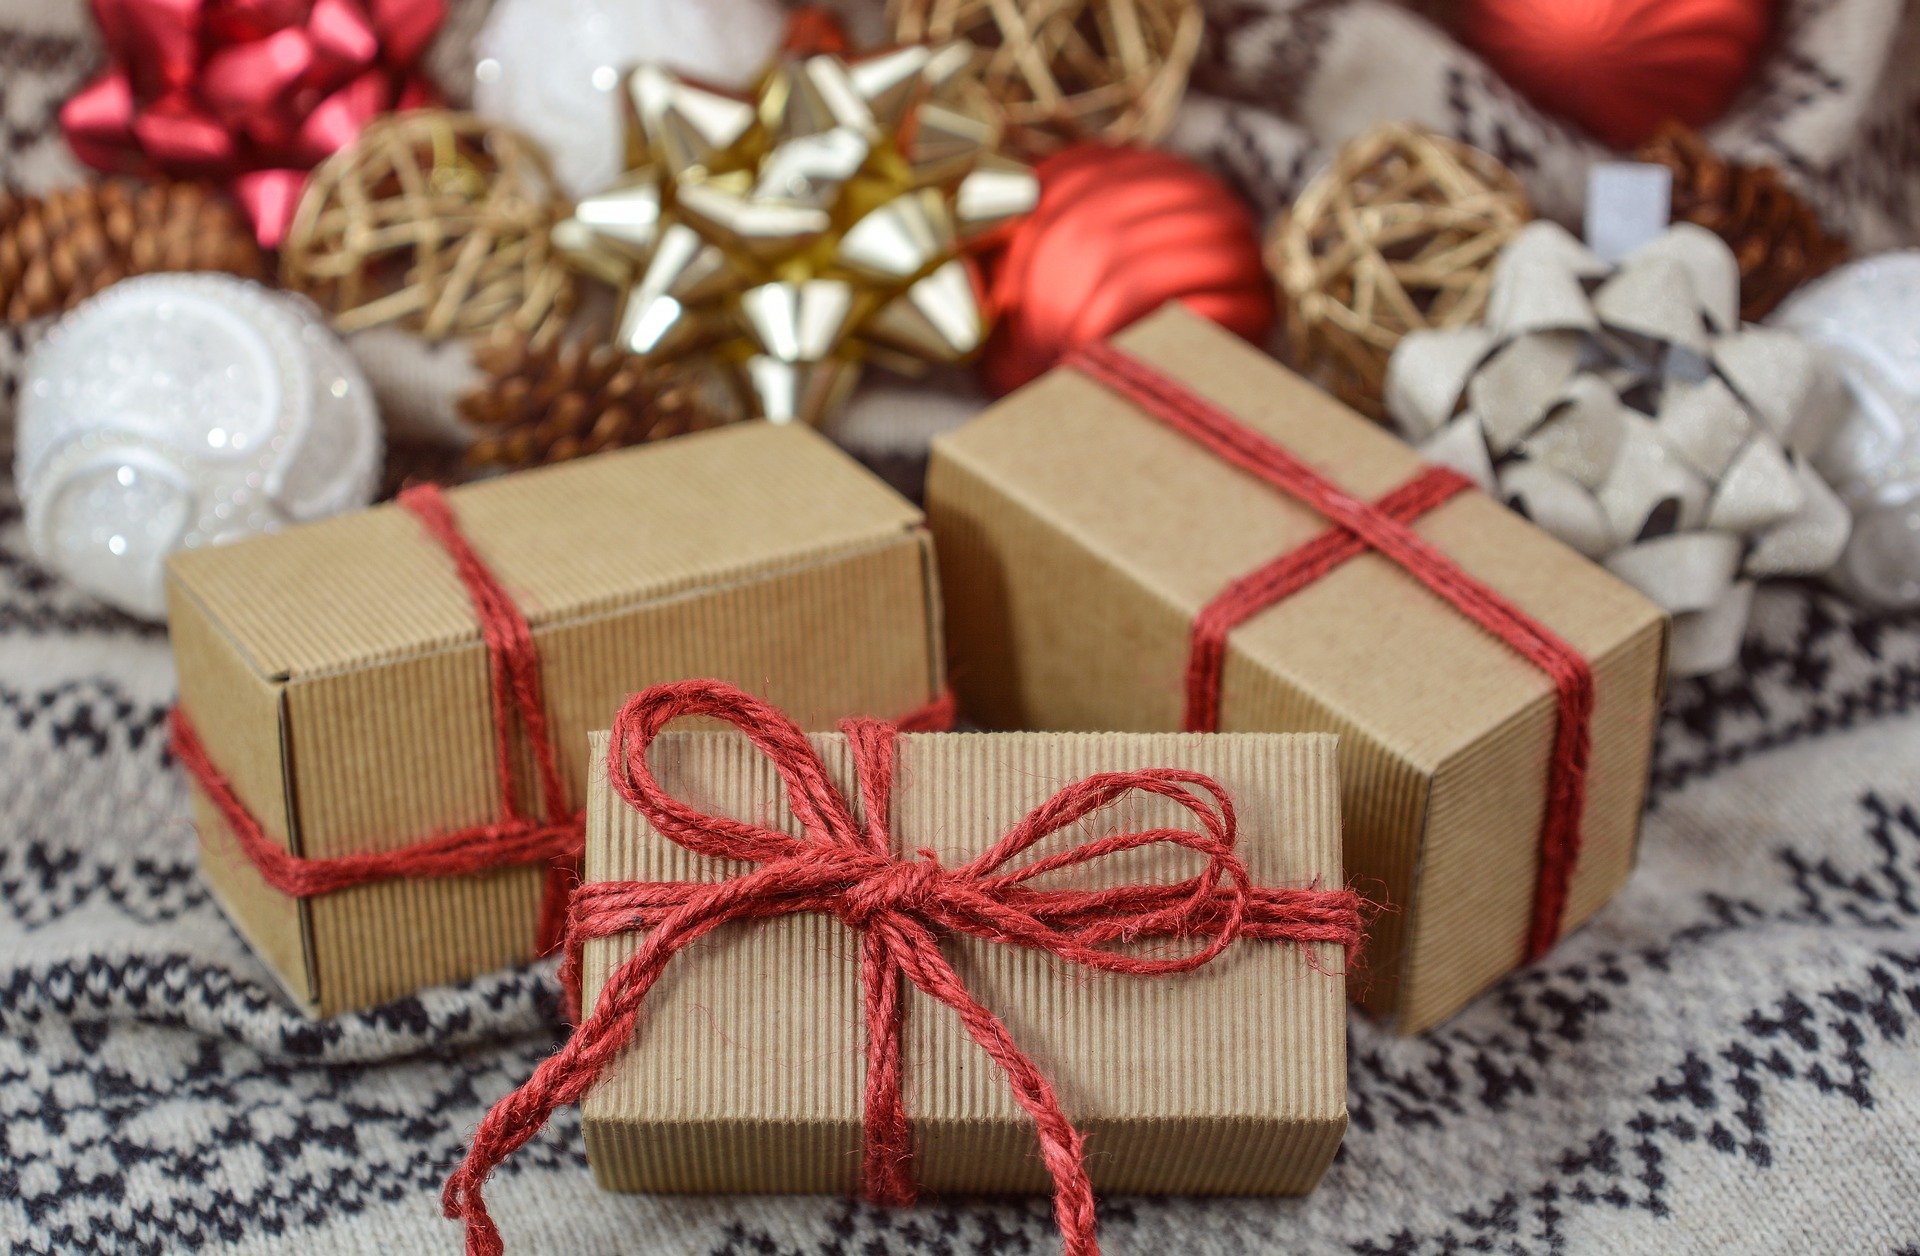 Gute Geschenke
    11 Ideen aus unserer Community

Wir haben gefragt - Ihr habt uns Eure Ideen für sinnvolle Weihnachts-Geschenke jenseits von Amazon und Co. geschickt.